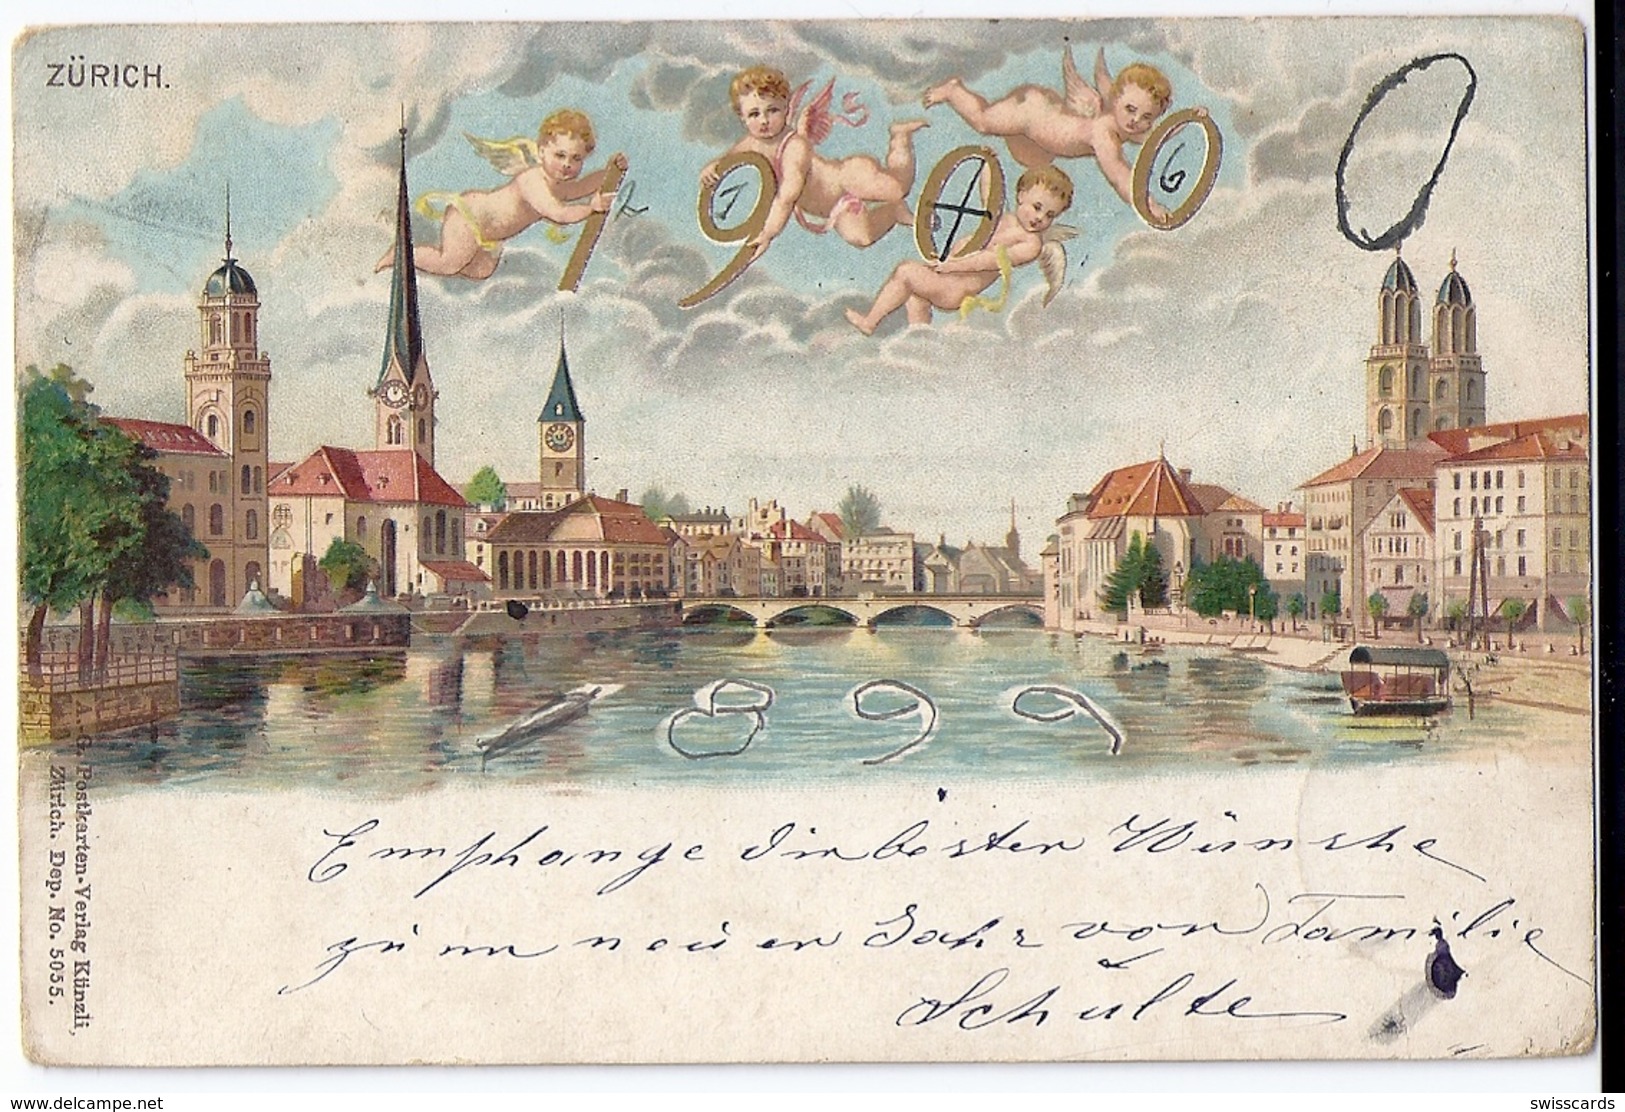 Jahrhundertwechsel 1899-1900 In ZÜRICH, Stempel: 31.12.1899 - Nieuwjaar